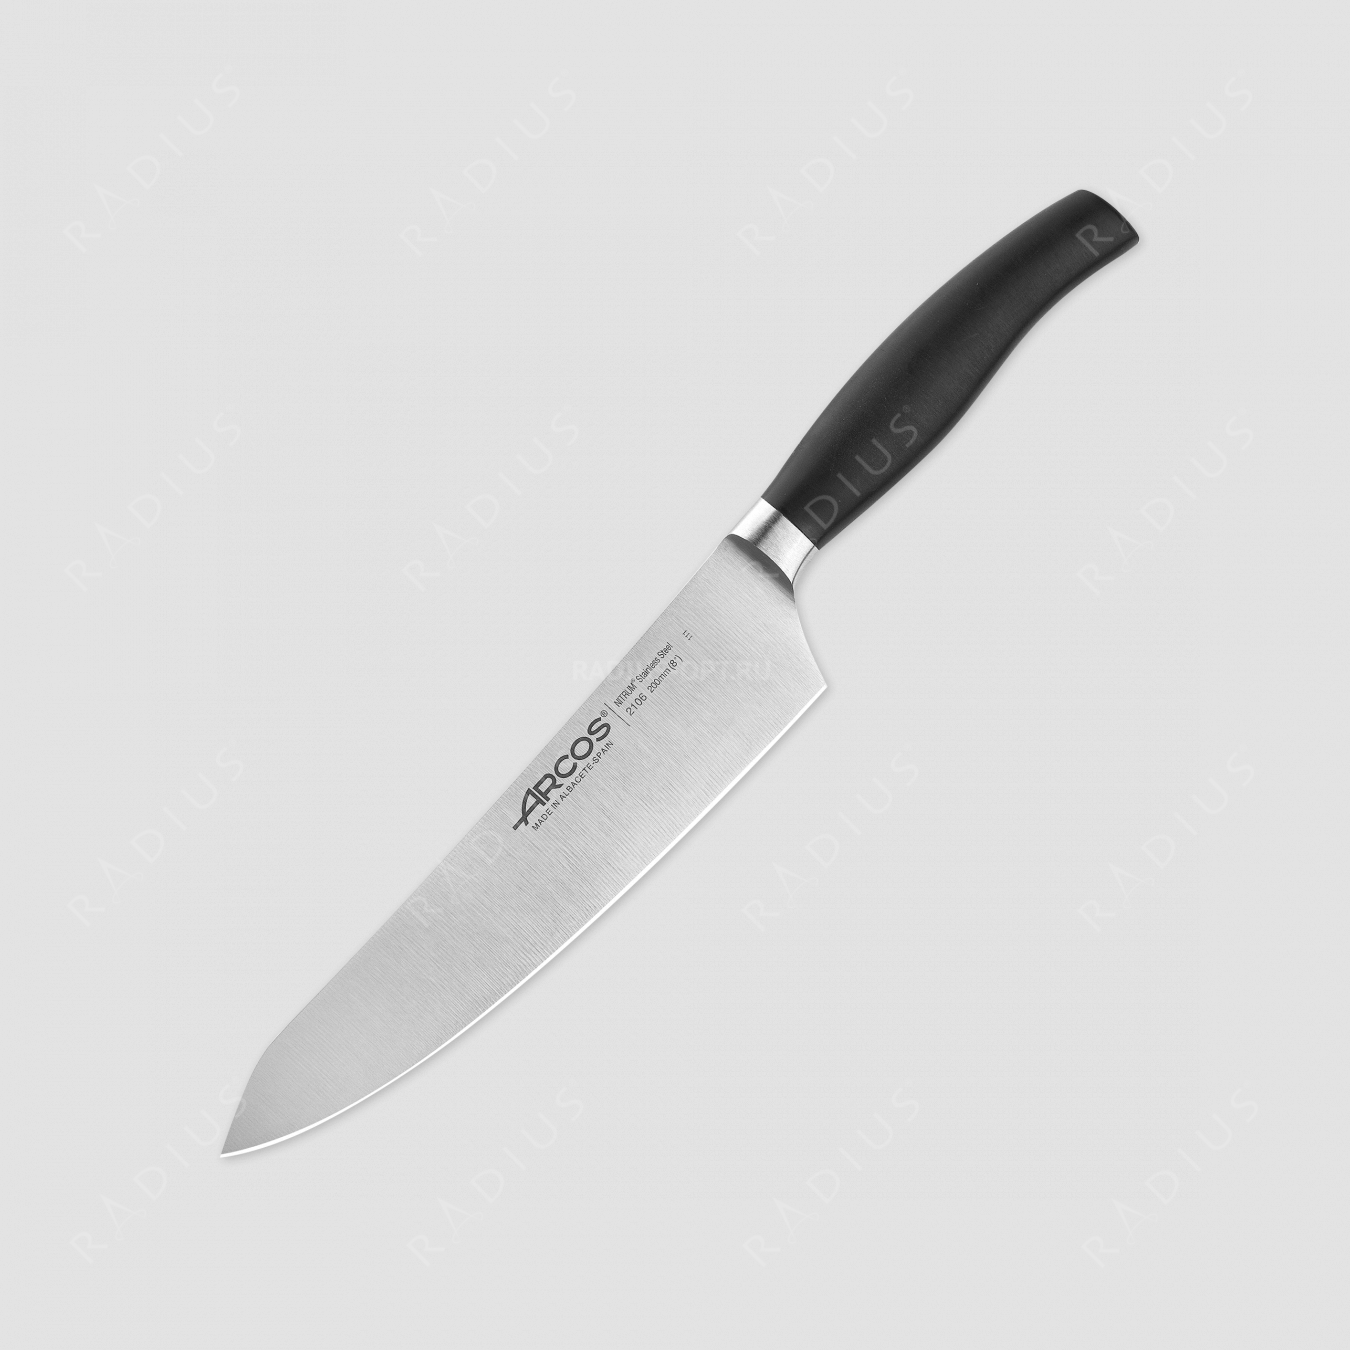 Нож кухонный поварской, 20 см, серия Clara, ARCOS, Испания